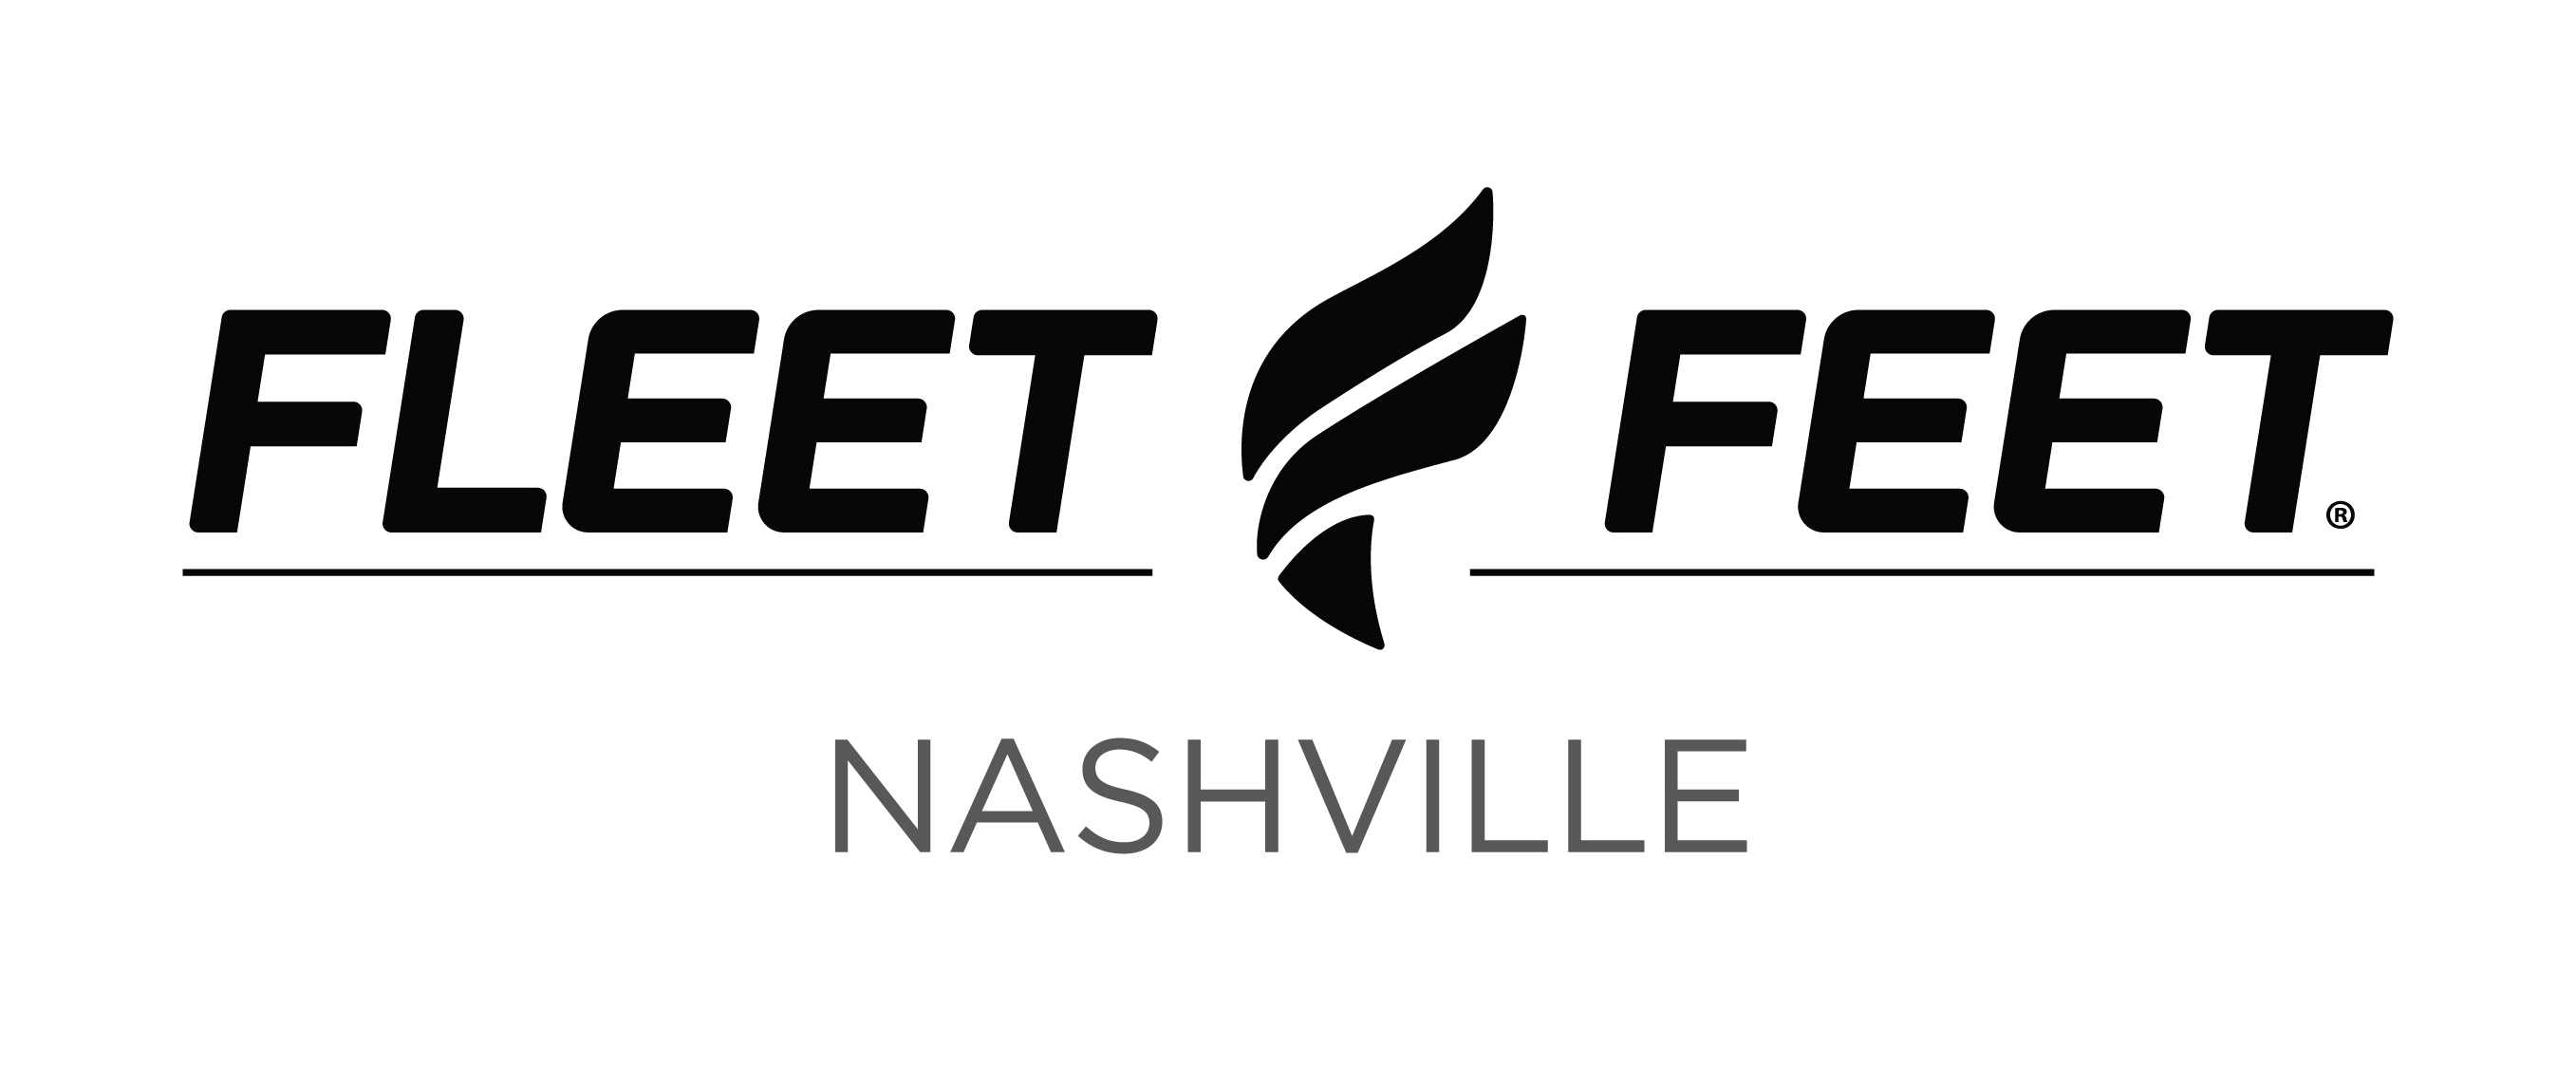 Fleet Feet Nashville